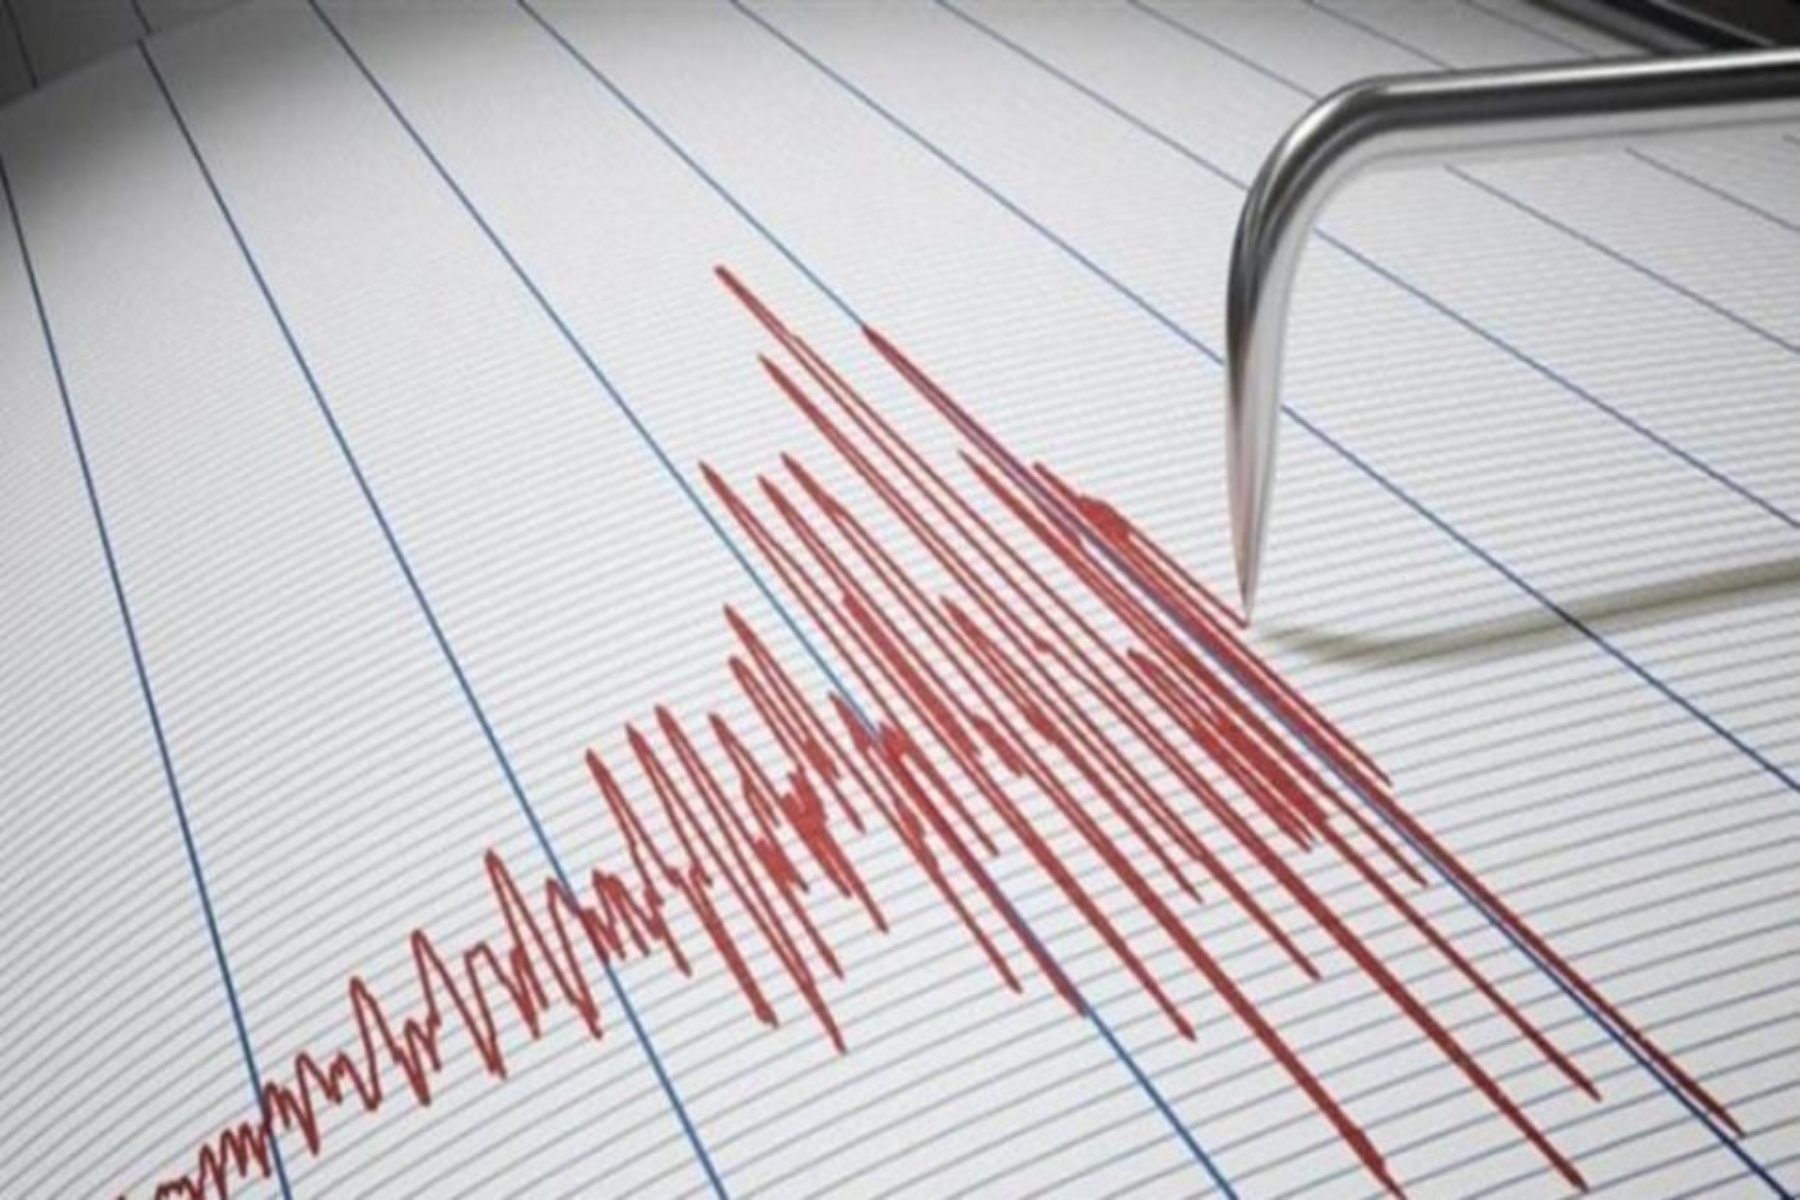 Σεισμός Ναύπακτος: Σεισμική δόνηση 4,3 ρίχτερ στο Μαραθιά Ναυπακτίας